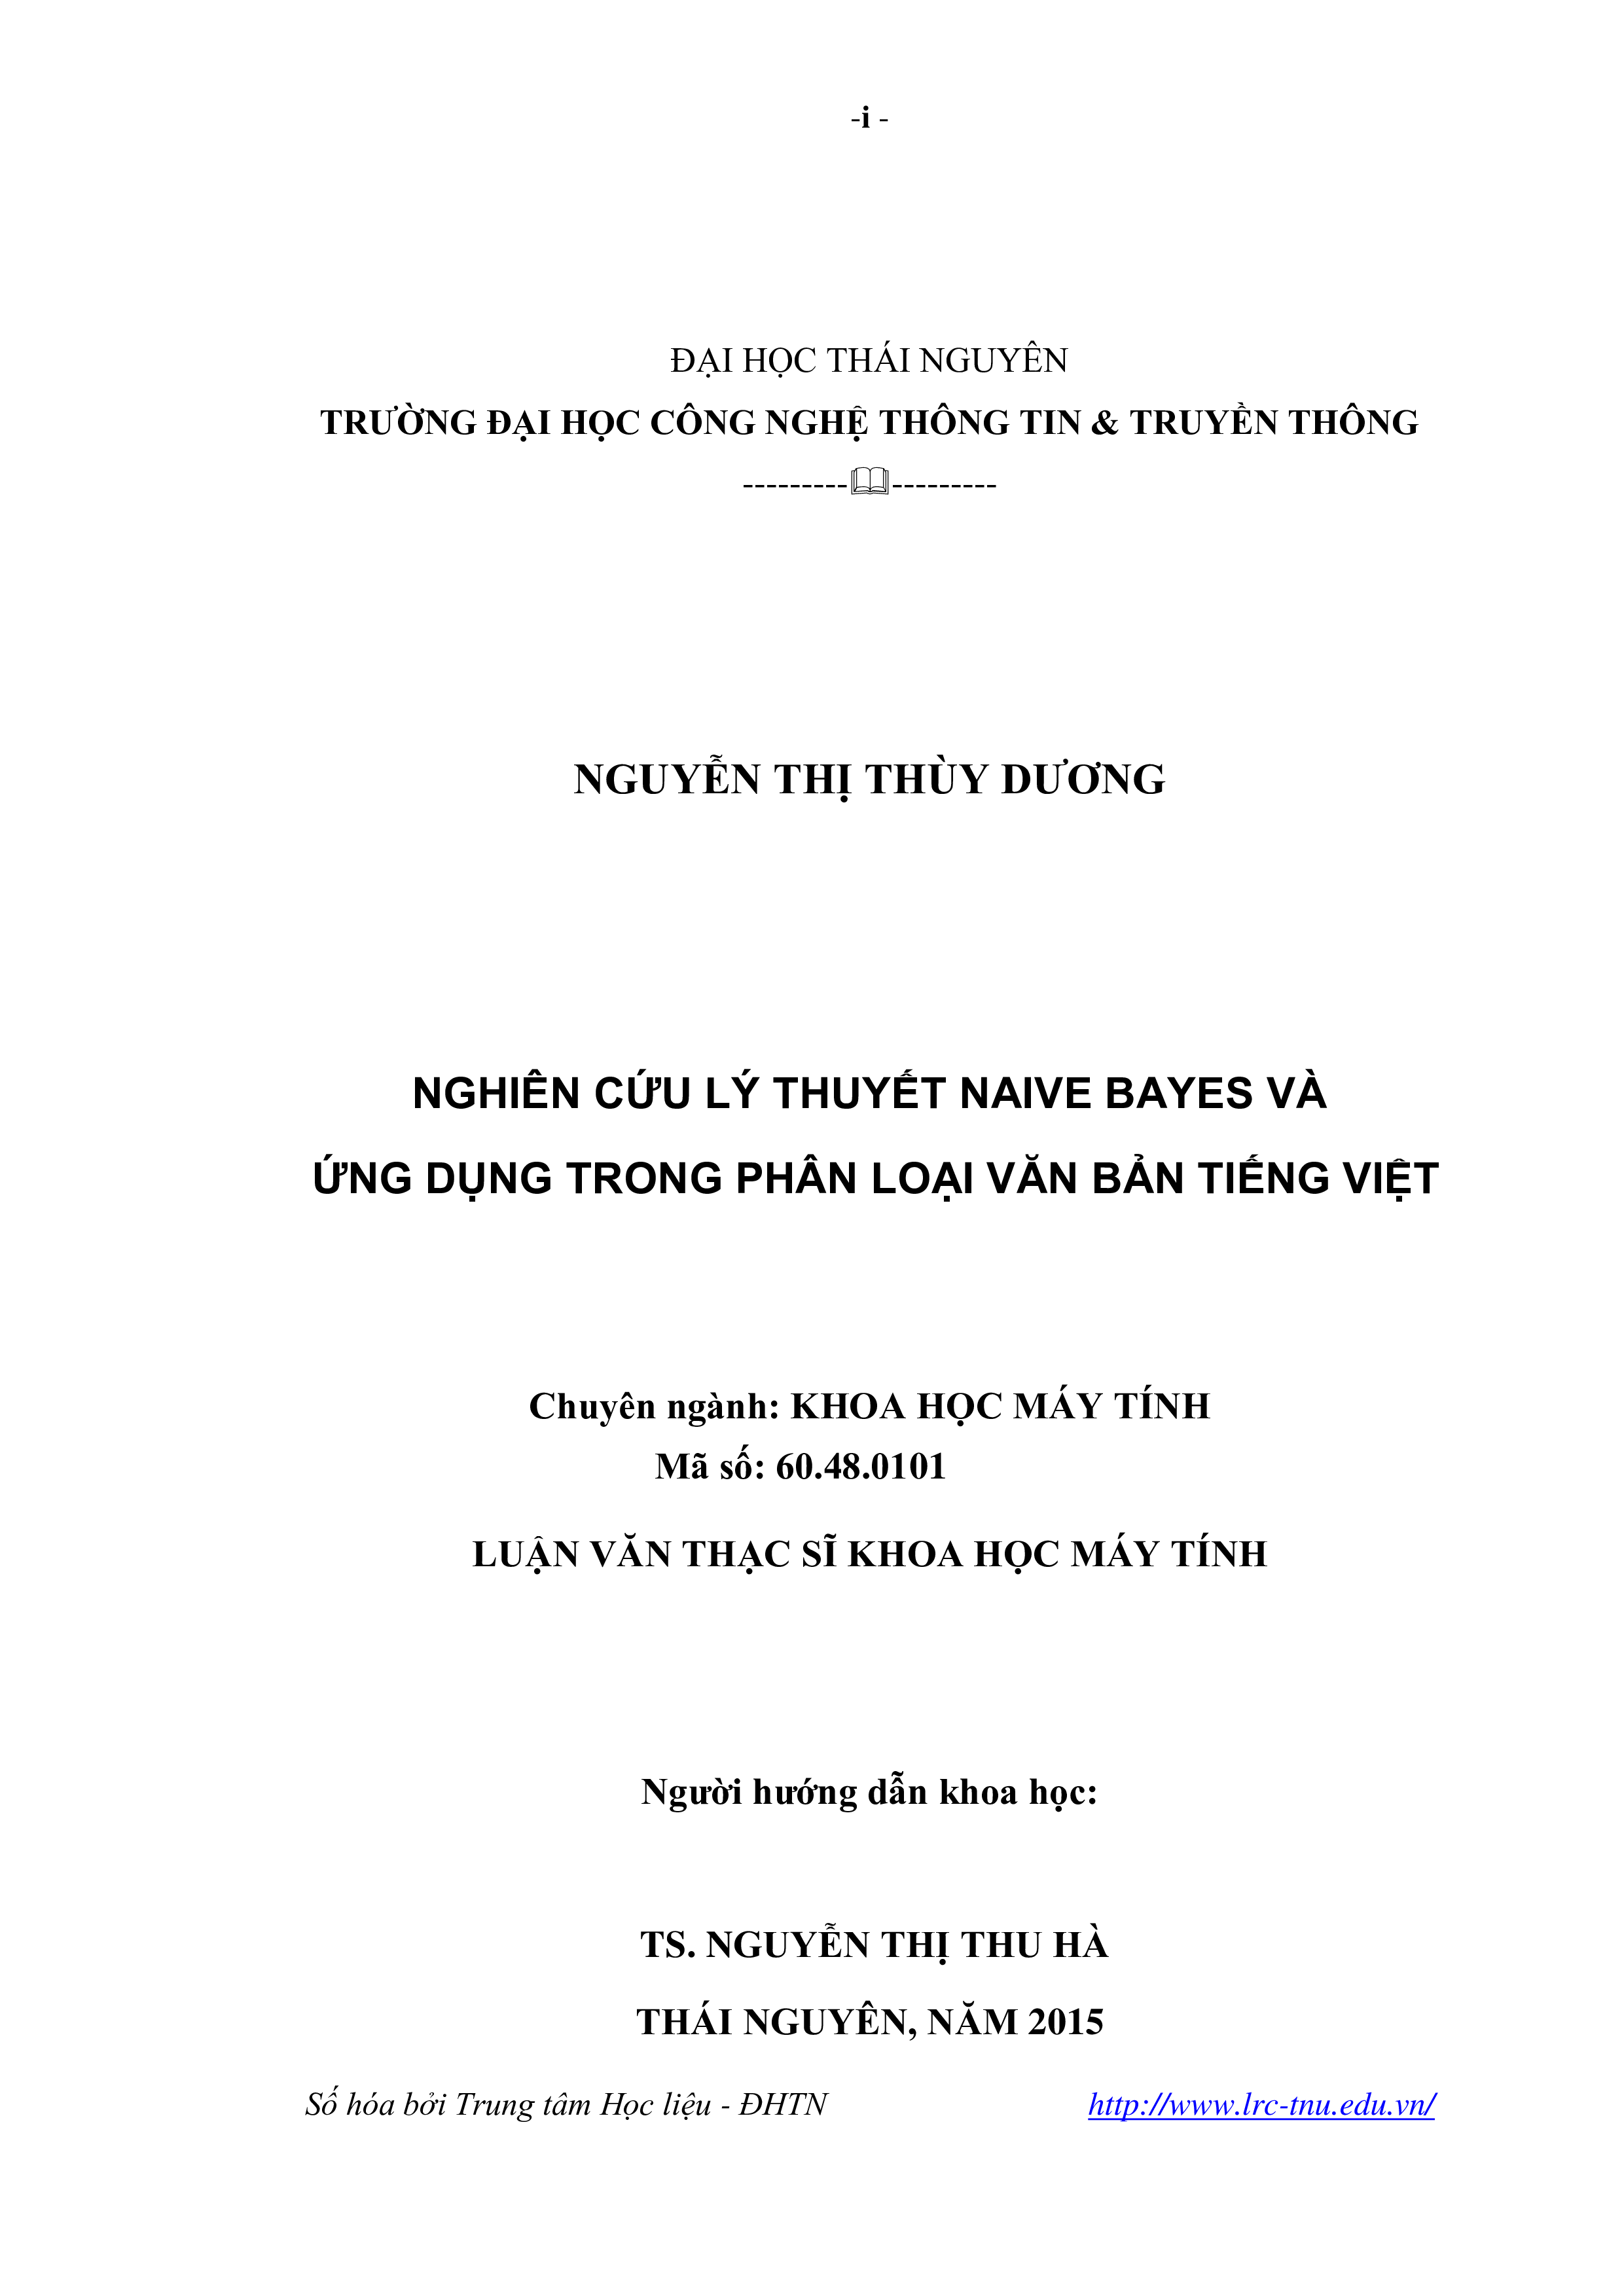 Nghiên cứu lý thuyết Naive Bayes và ứng dụng trong phân loại văn bản tiếng Việt